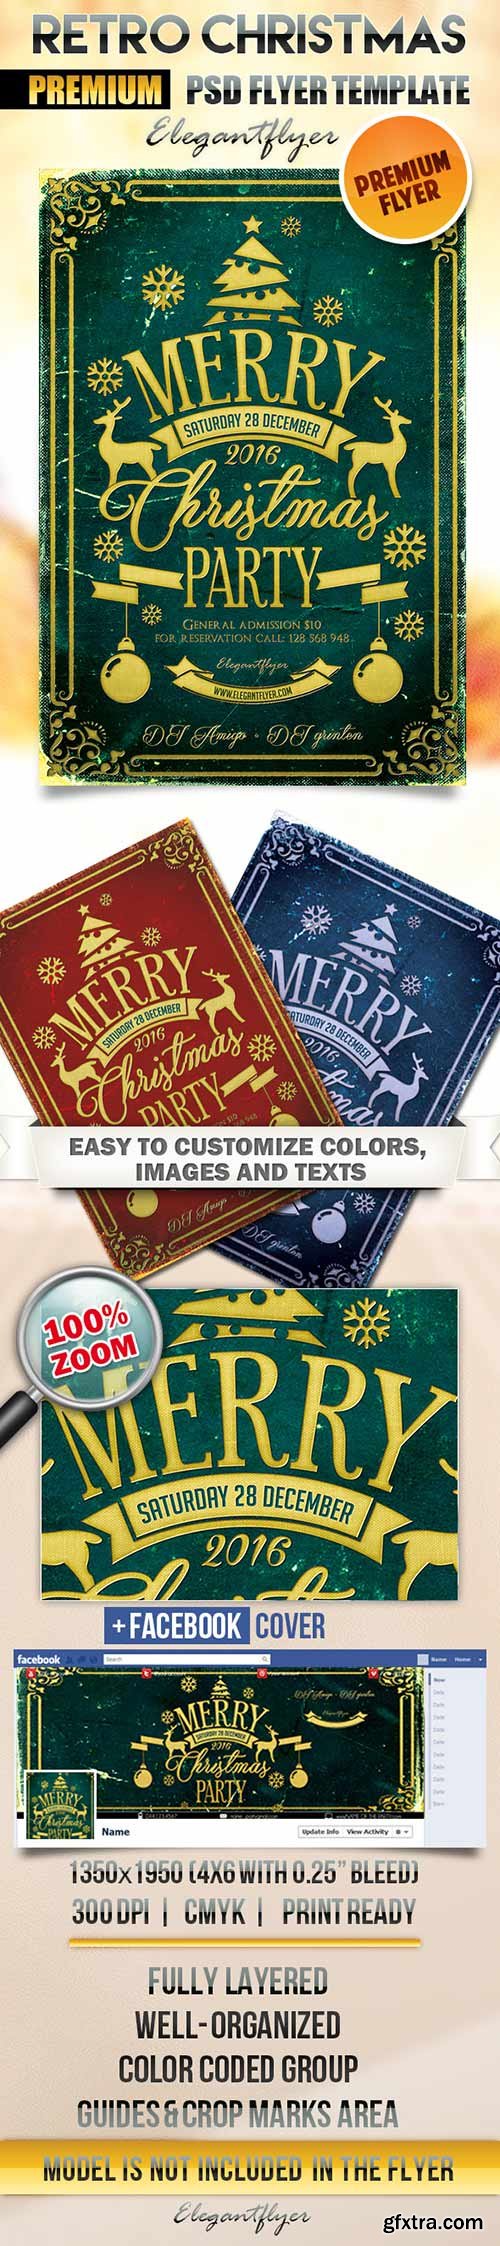 Retro Christmas Flyer PSD Template + Facebook Cover